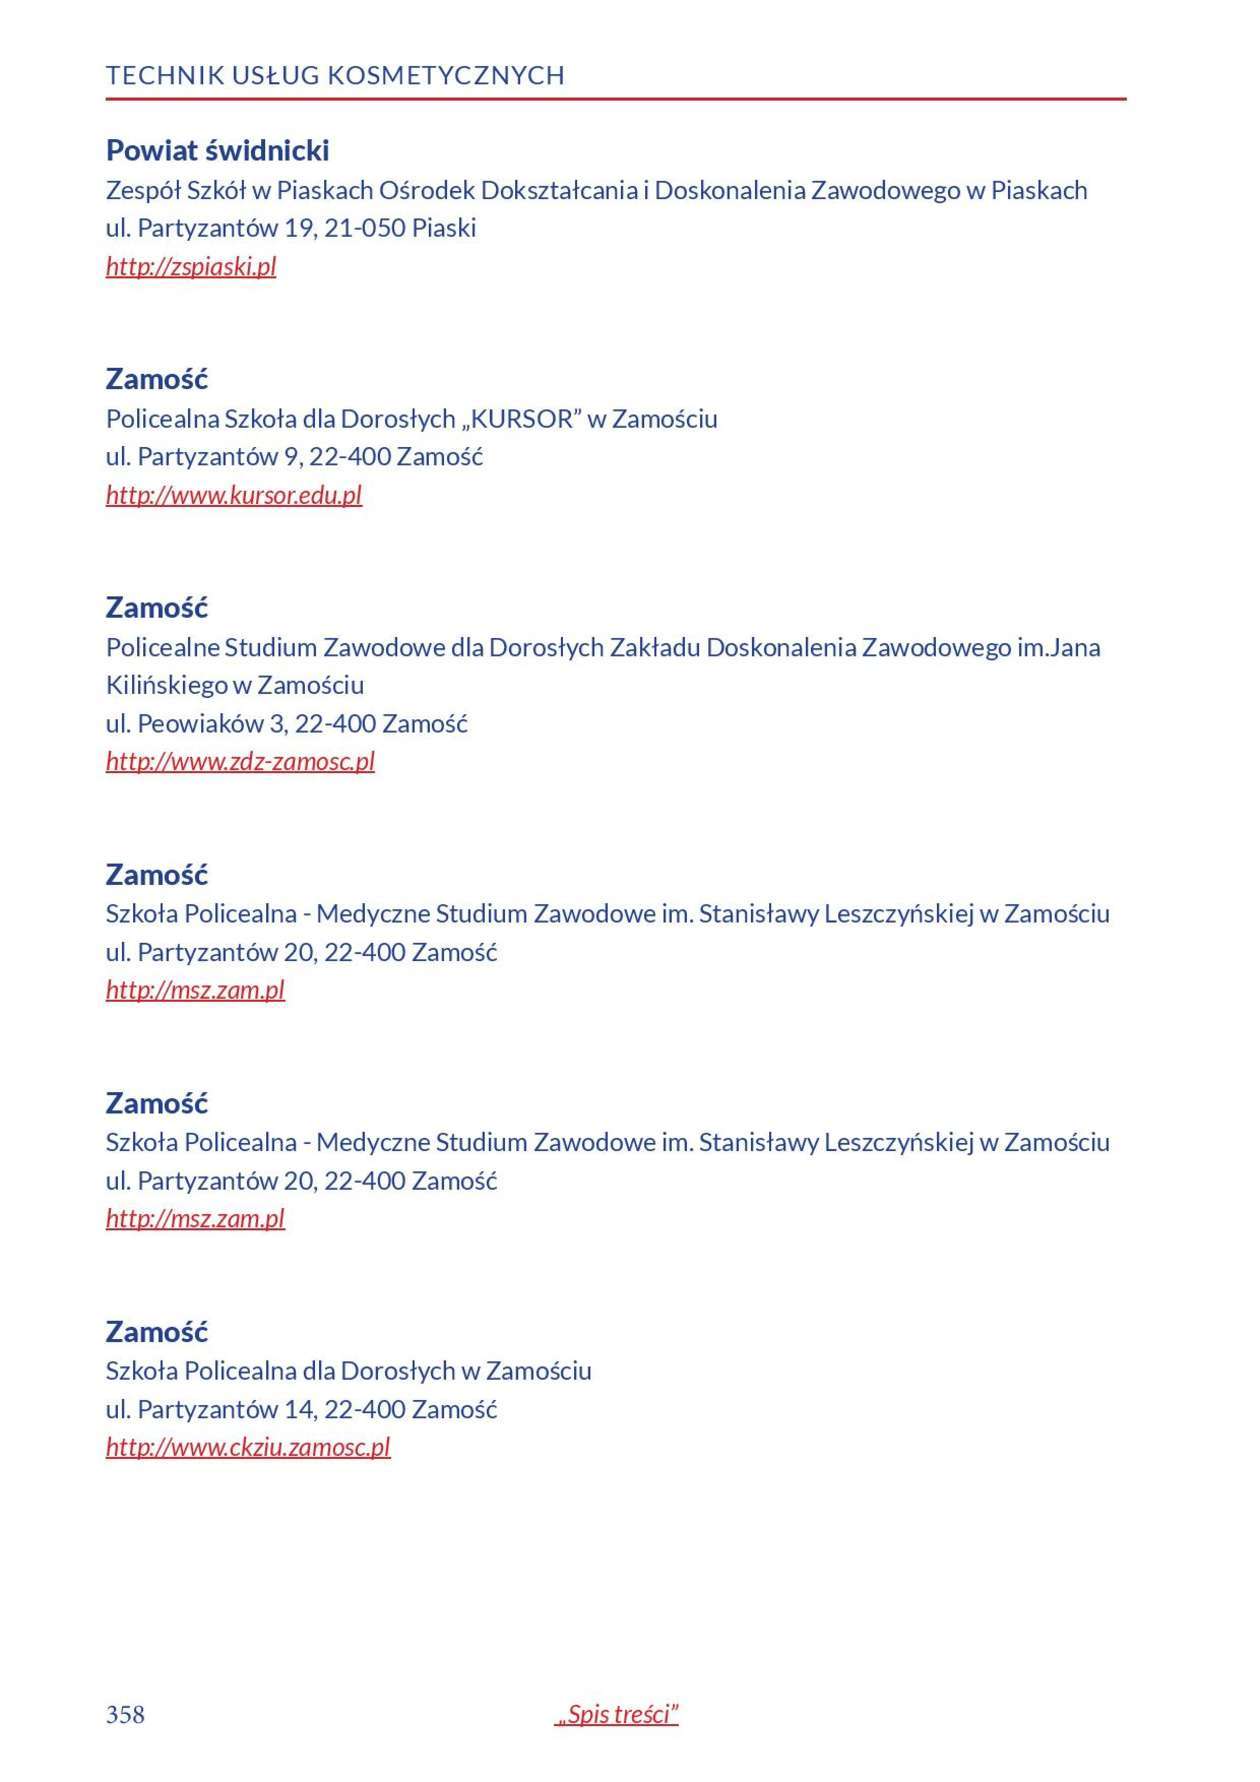  Informator o zawodach 2018/2019 w woj. lubelskim. Część 2 (zdjęcie 159) - Autor: Kuratorium Oświaty w Lublinie